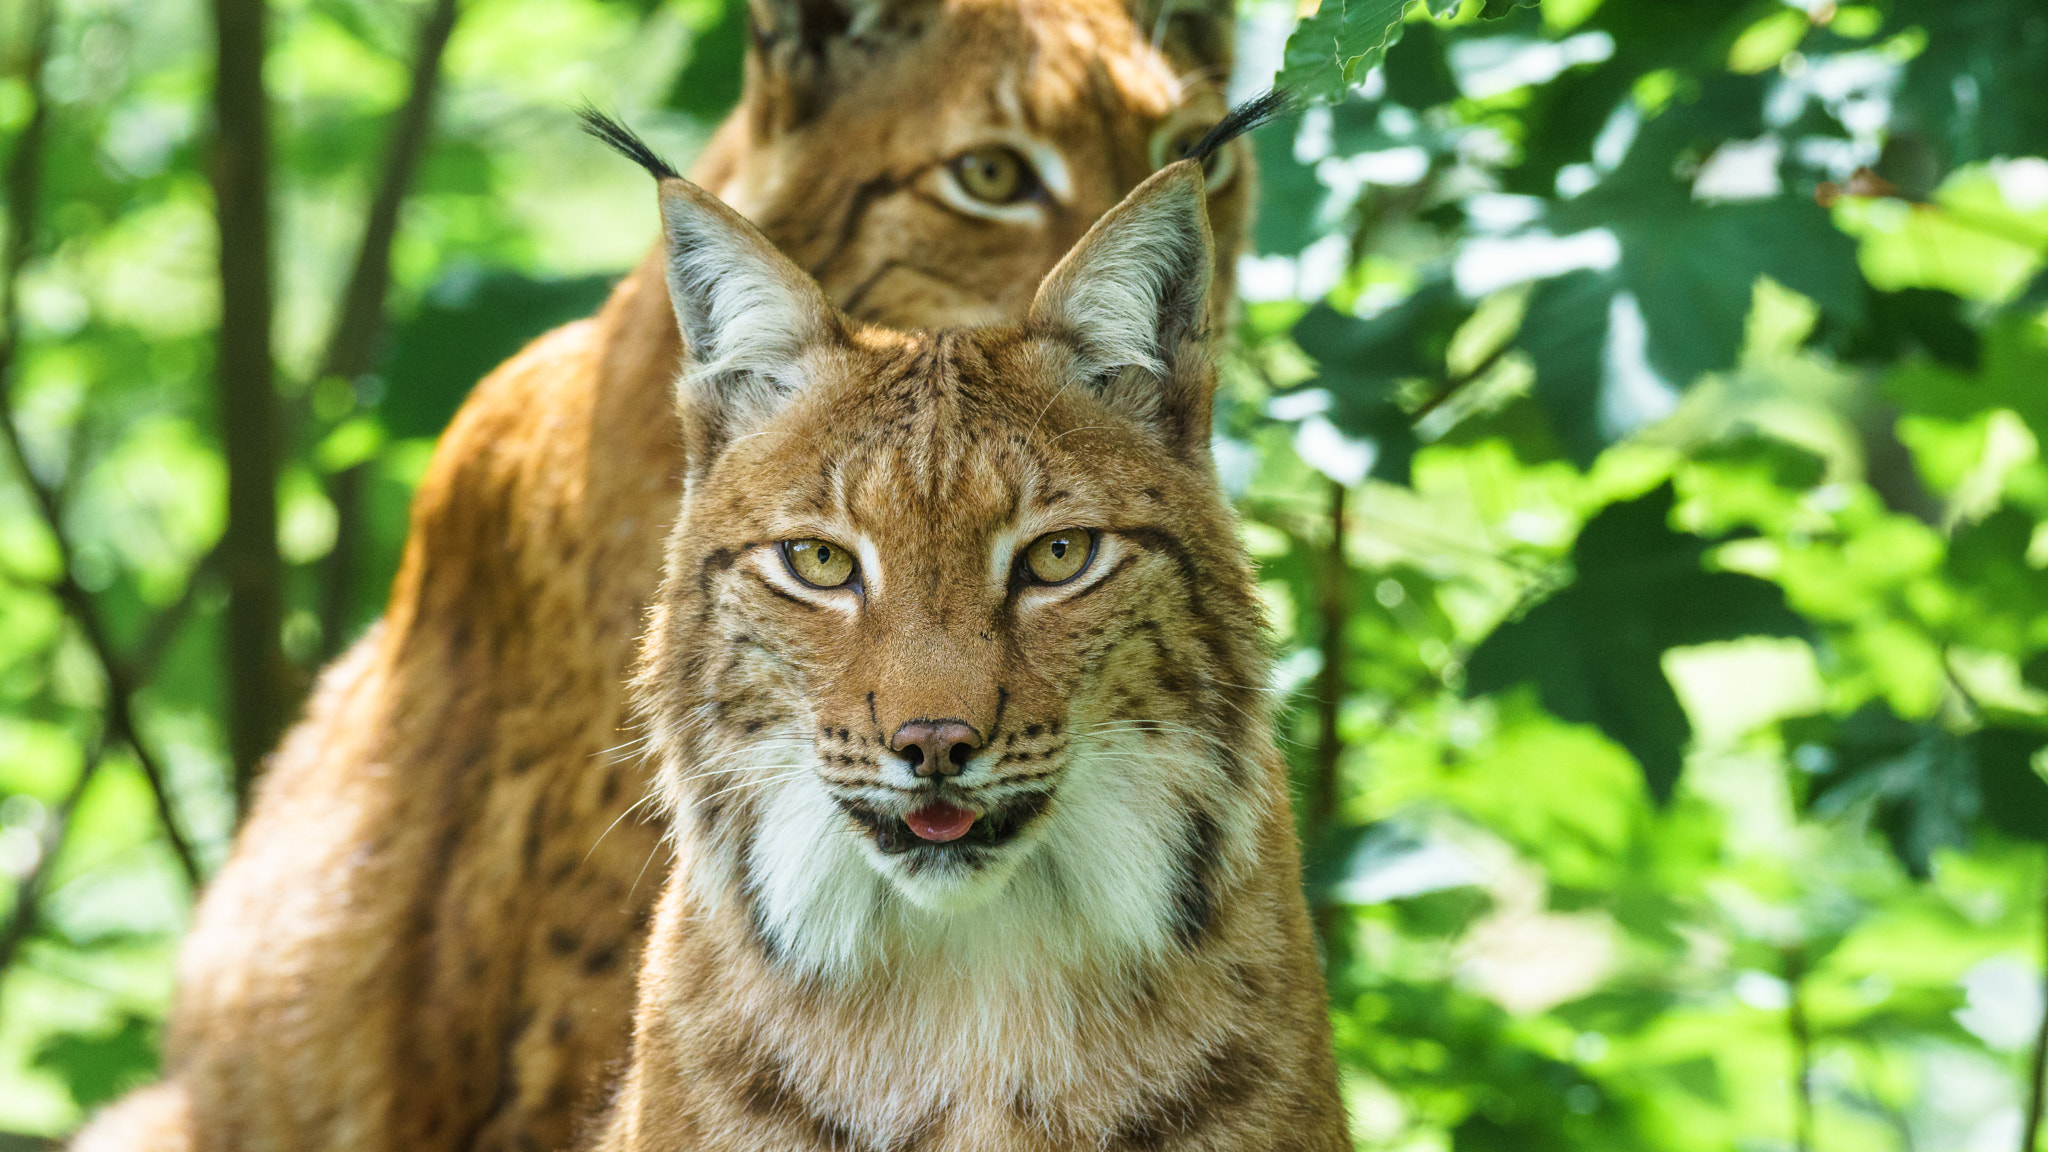 Sony a6000 sample photo. Lynx couple in wildernesspark grünau, austria photography